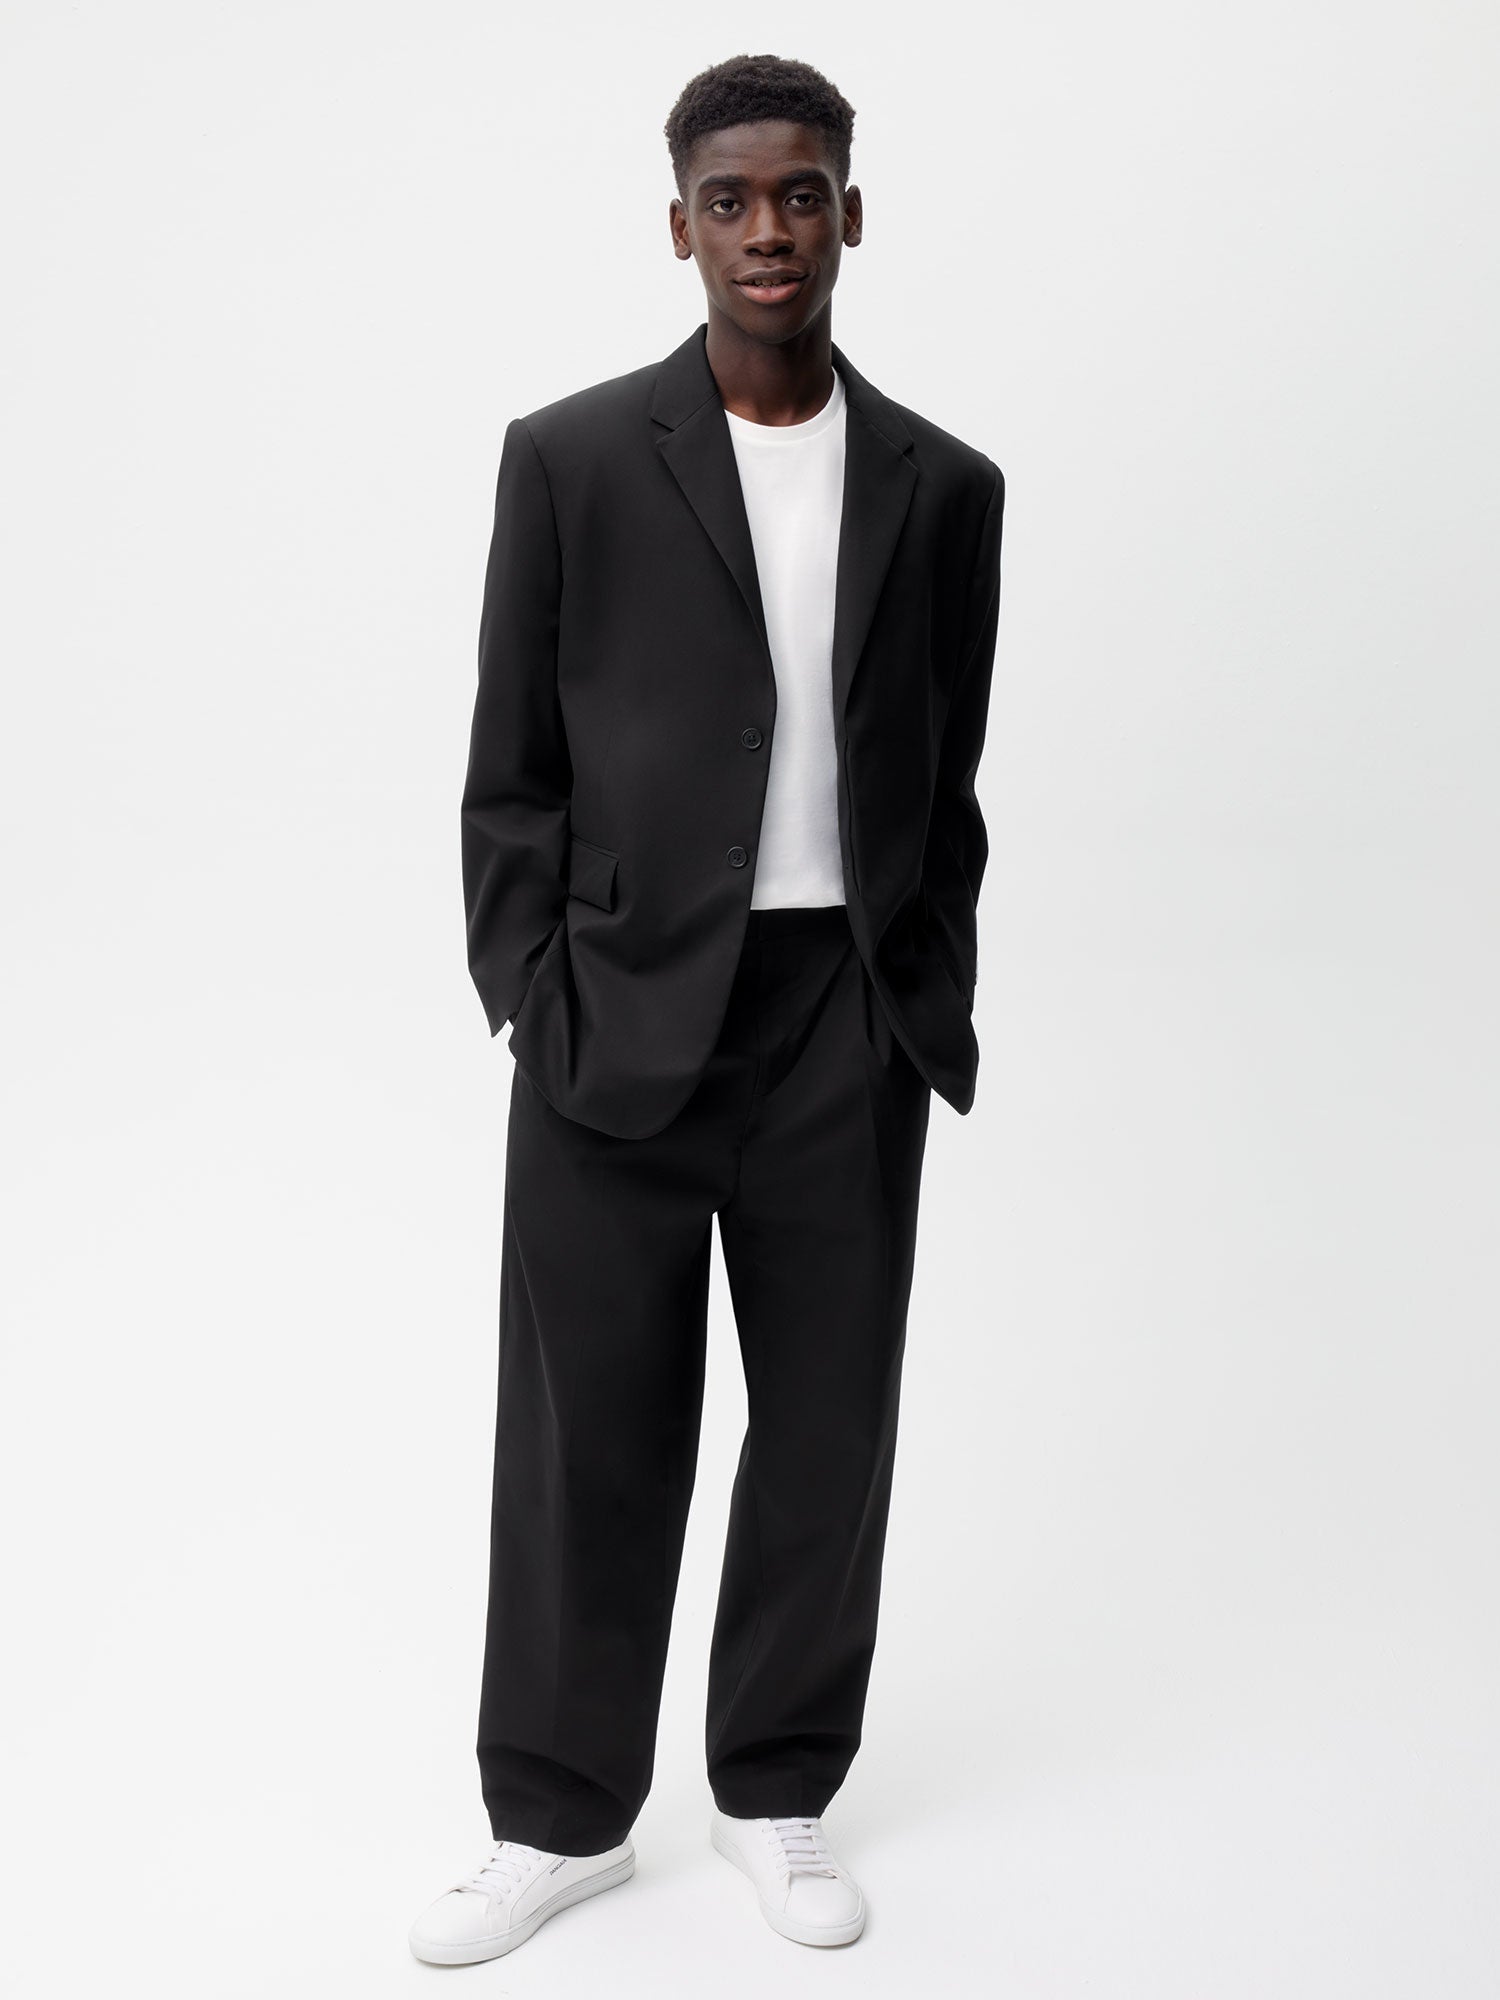 Men's Black Formal Trousers | Slim & Regular Fit | Next